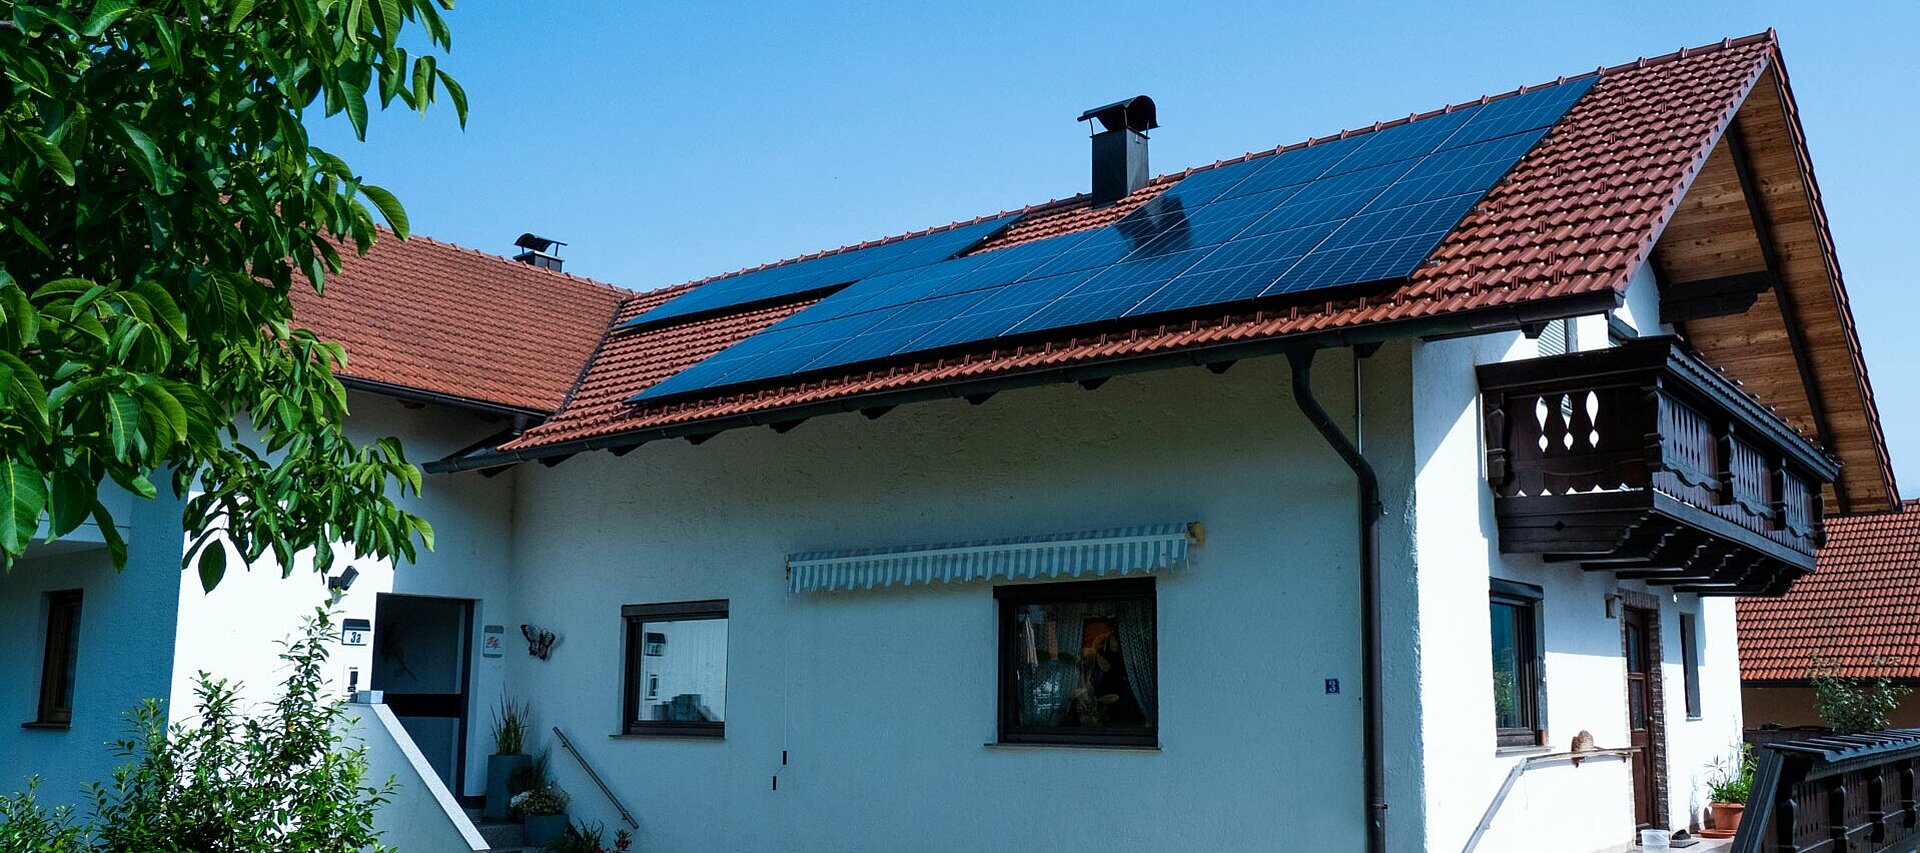 Einfamilienhaus mit 23 Photovoltaikmodulen auf dem Schrägdach